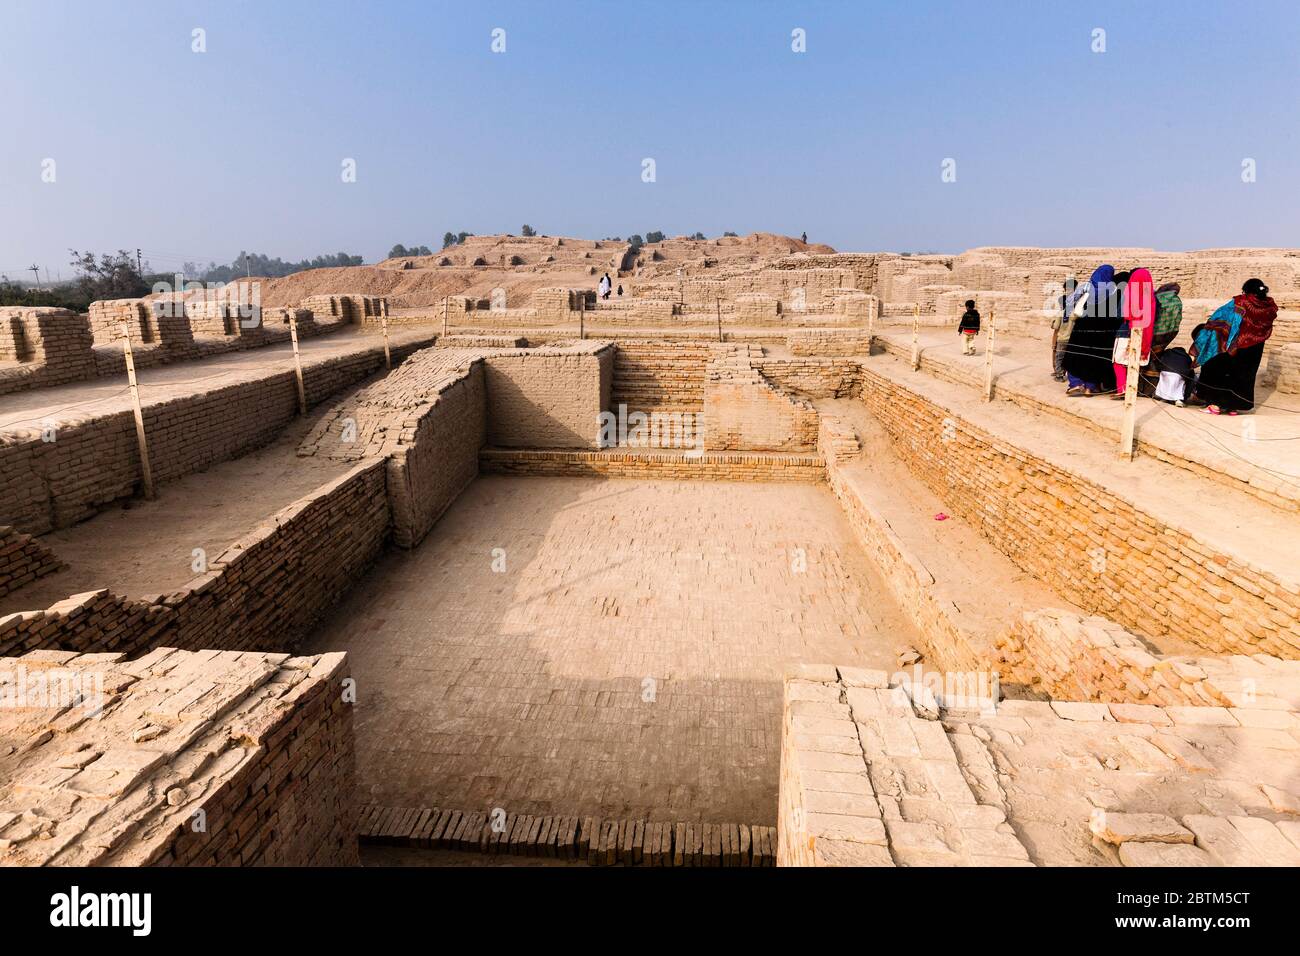 Mohenjo daro, großes Bad, archäologische Stätte der Indus-Tal-Zivilisation, 2500 v. Chr., Larkana District, Sindh Provinz, Pakistan, Südasien, Asien Stockfoto